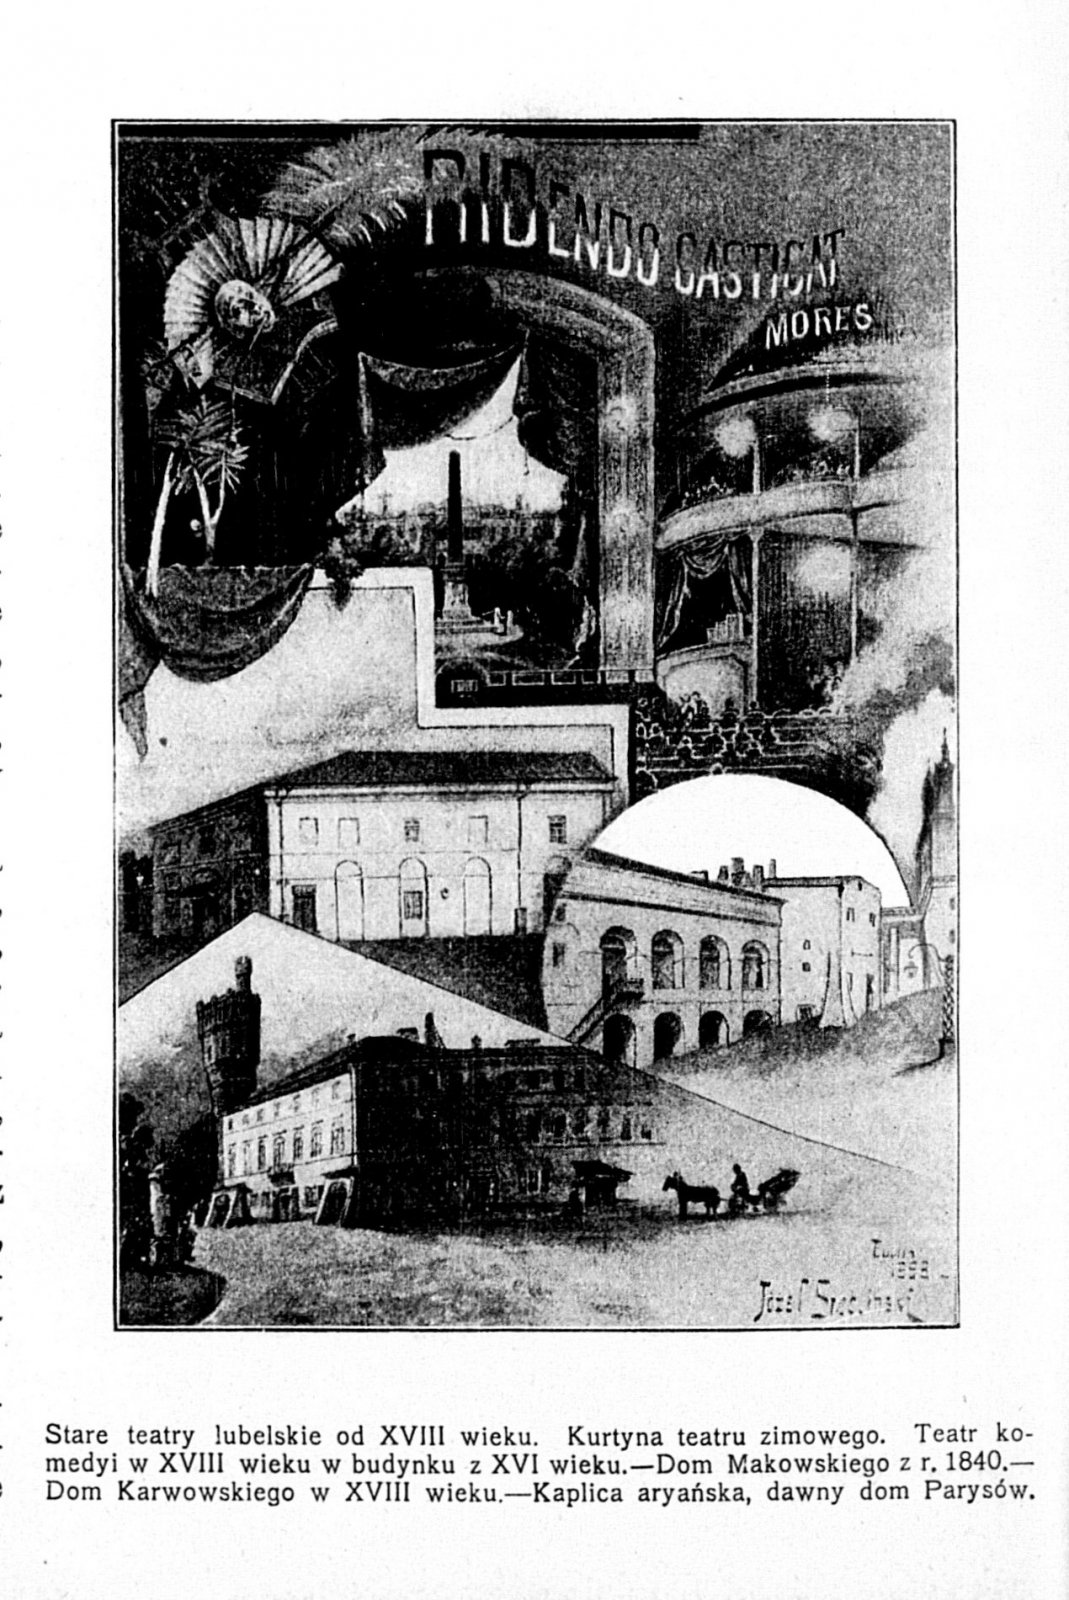 Графіка з газети, на якій показано старі люблінські театри, вгорі видно інтер’єр театру Маковських, а знизу його корпус, «Biesiada Literacka» 1901 р.